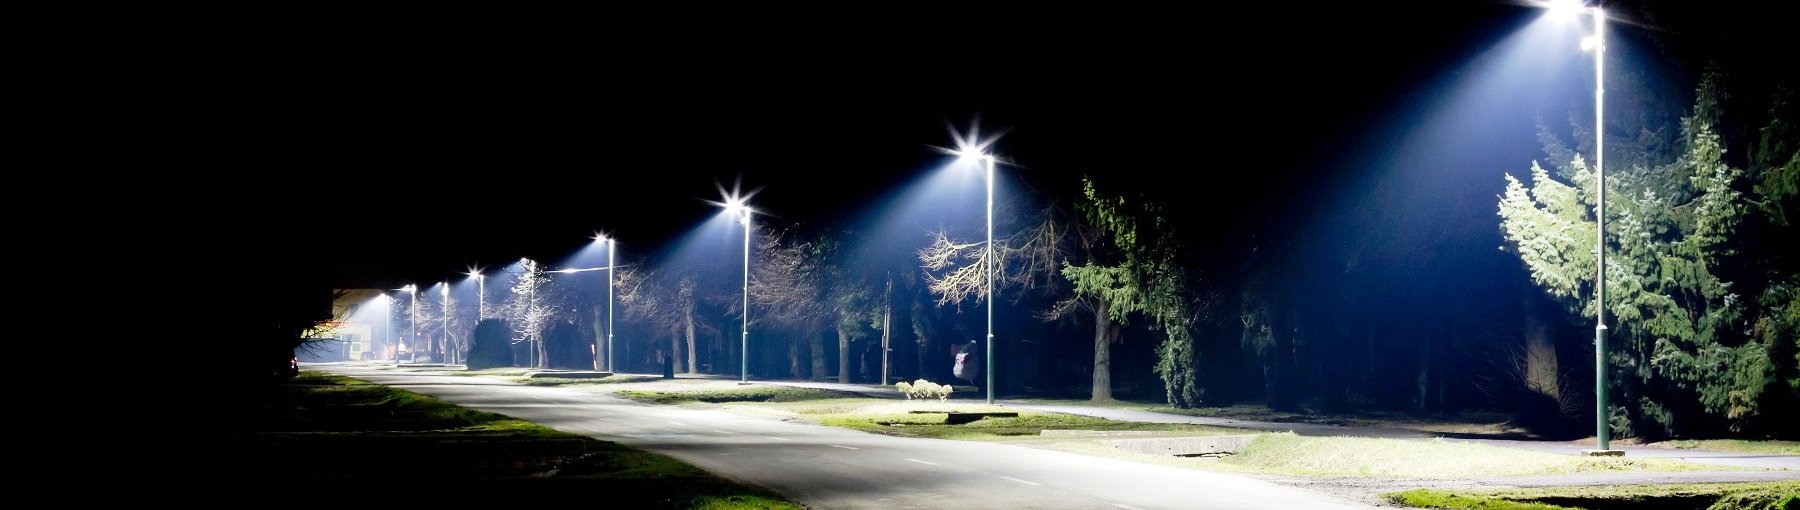 Dziwnów wymieni co czwartą lampę uliczną. Fot. Milan Noga/Shutterstock